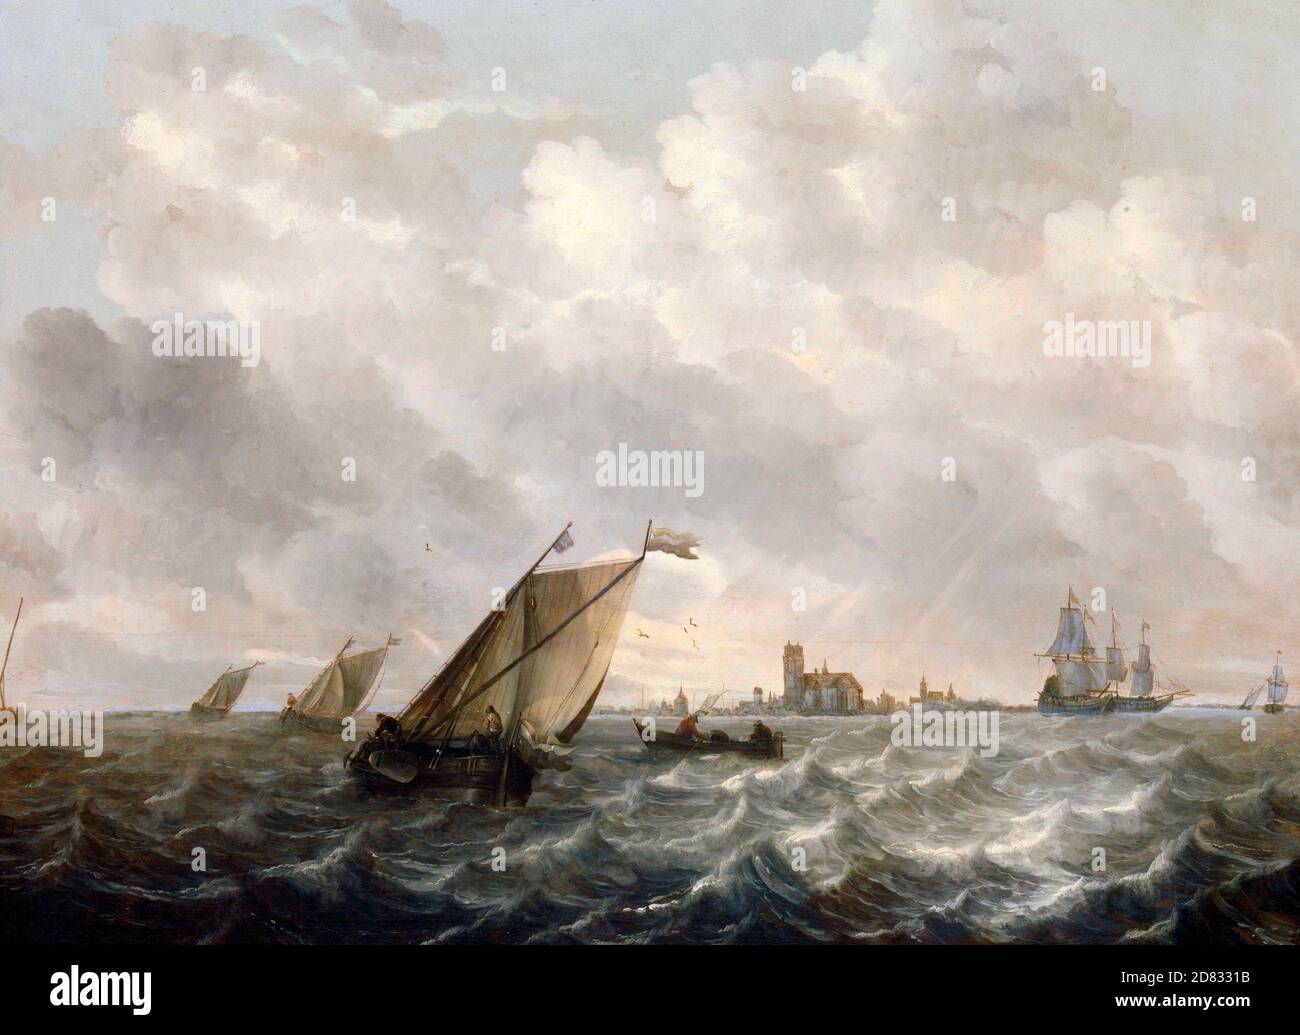 Vista fiume - navi e barche su acque agitate con un profilo della città in lontananza - Abraham van Beijeren, circa 1660 Foto Stock